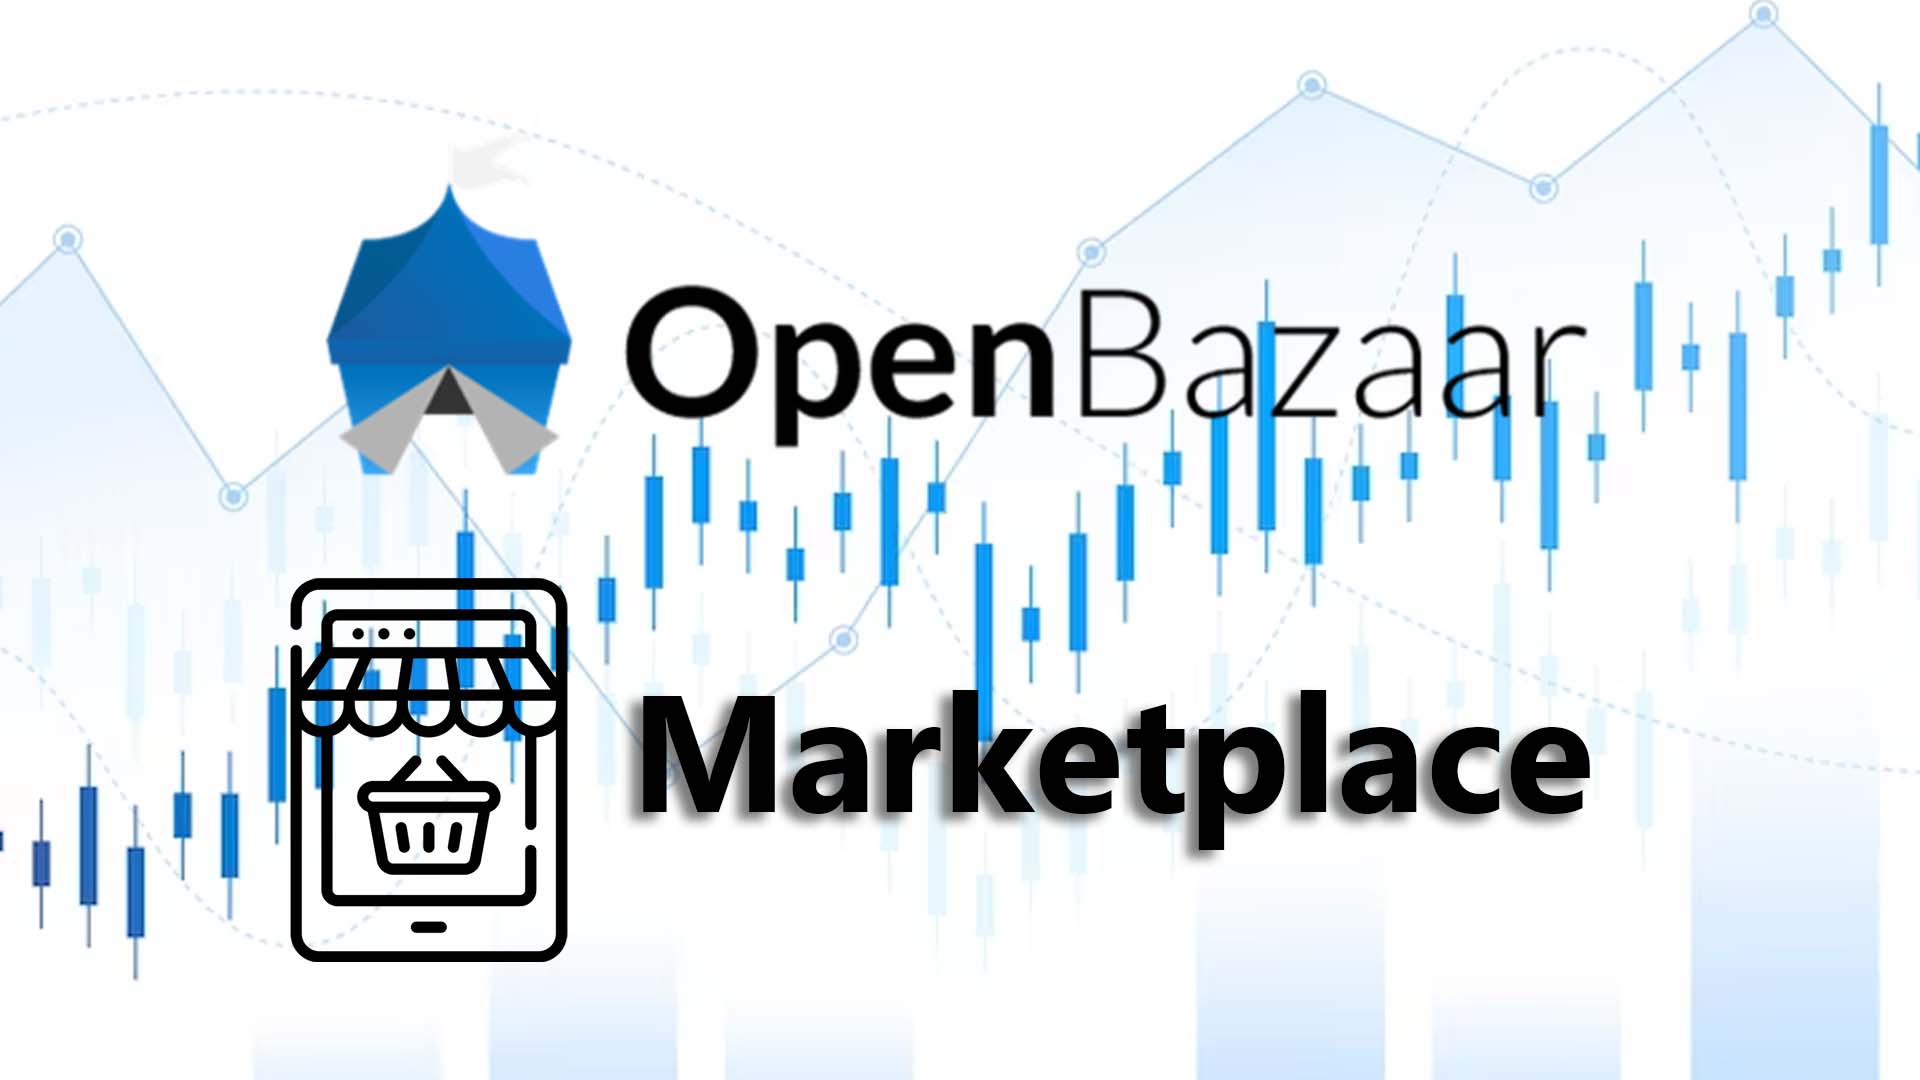 OpenBazaar